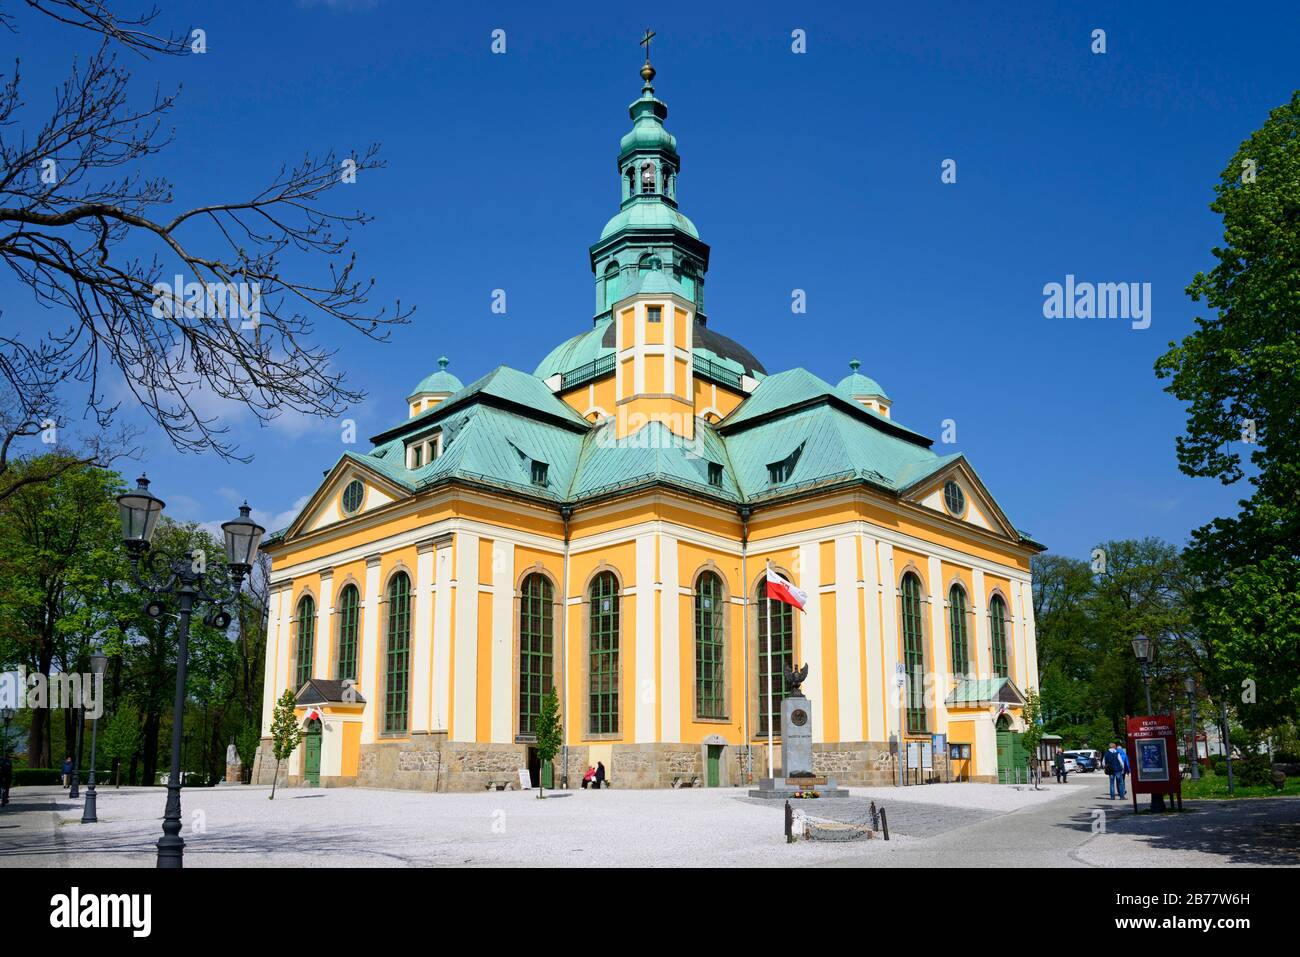 Holy Cross Church, Jelenia Gora, Lower Silesia, Krkonose Mountains, Poland Stock Photo